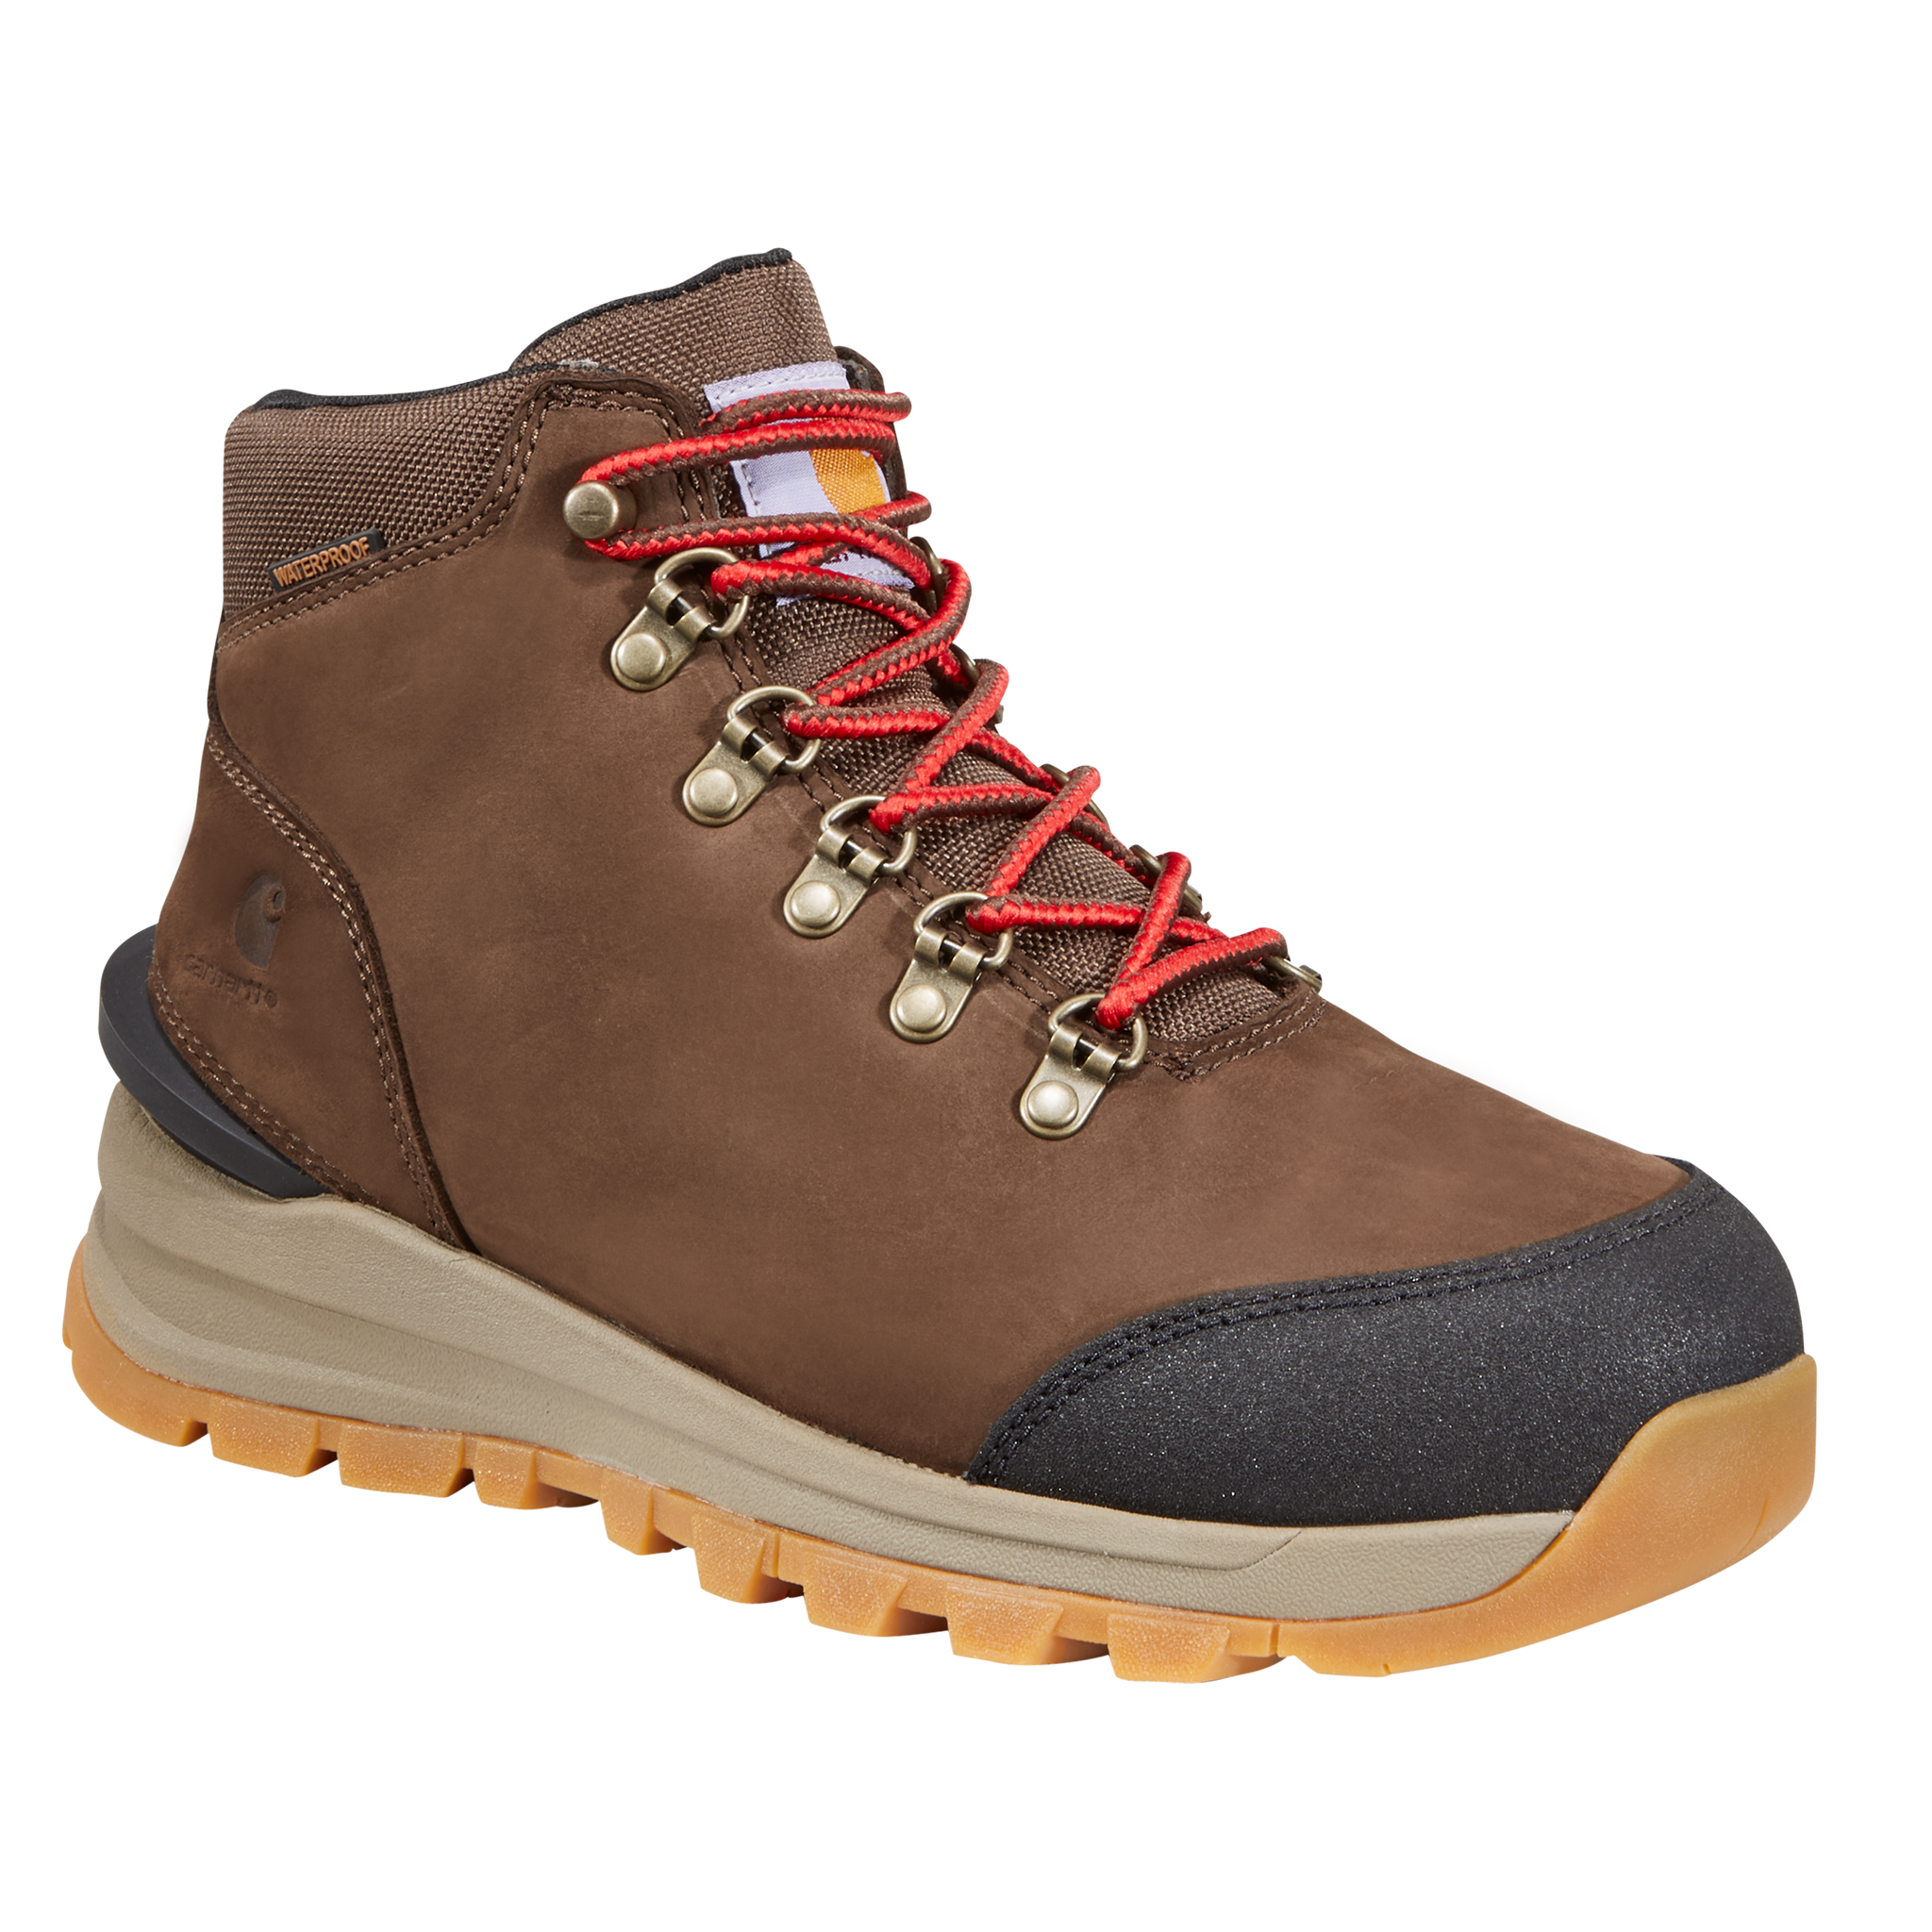 Carhartt Gilmore Waterproof Hiking Boots for Ladies - Dark Brown Nubuck - 7M